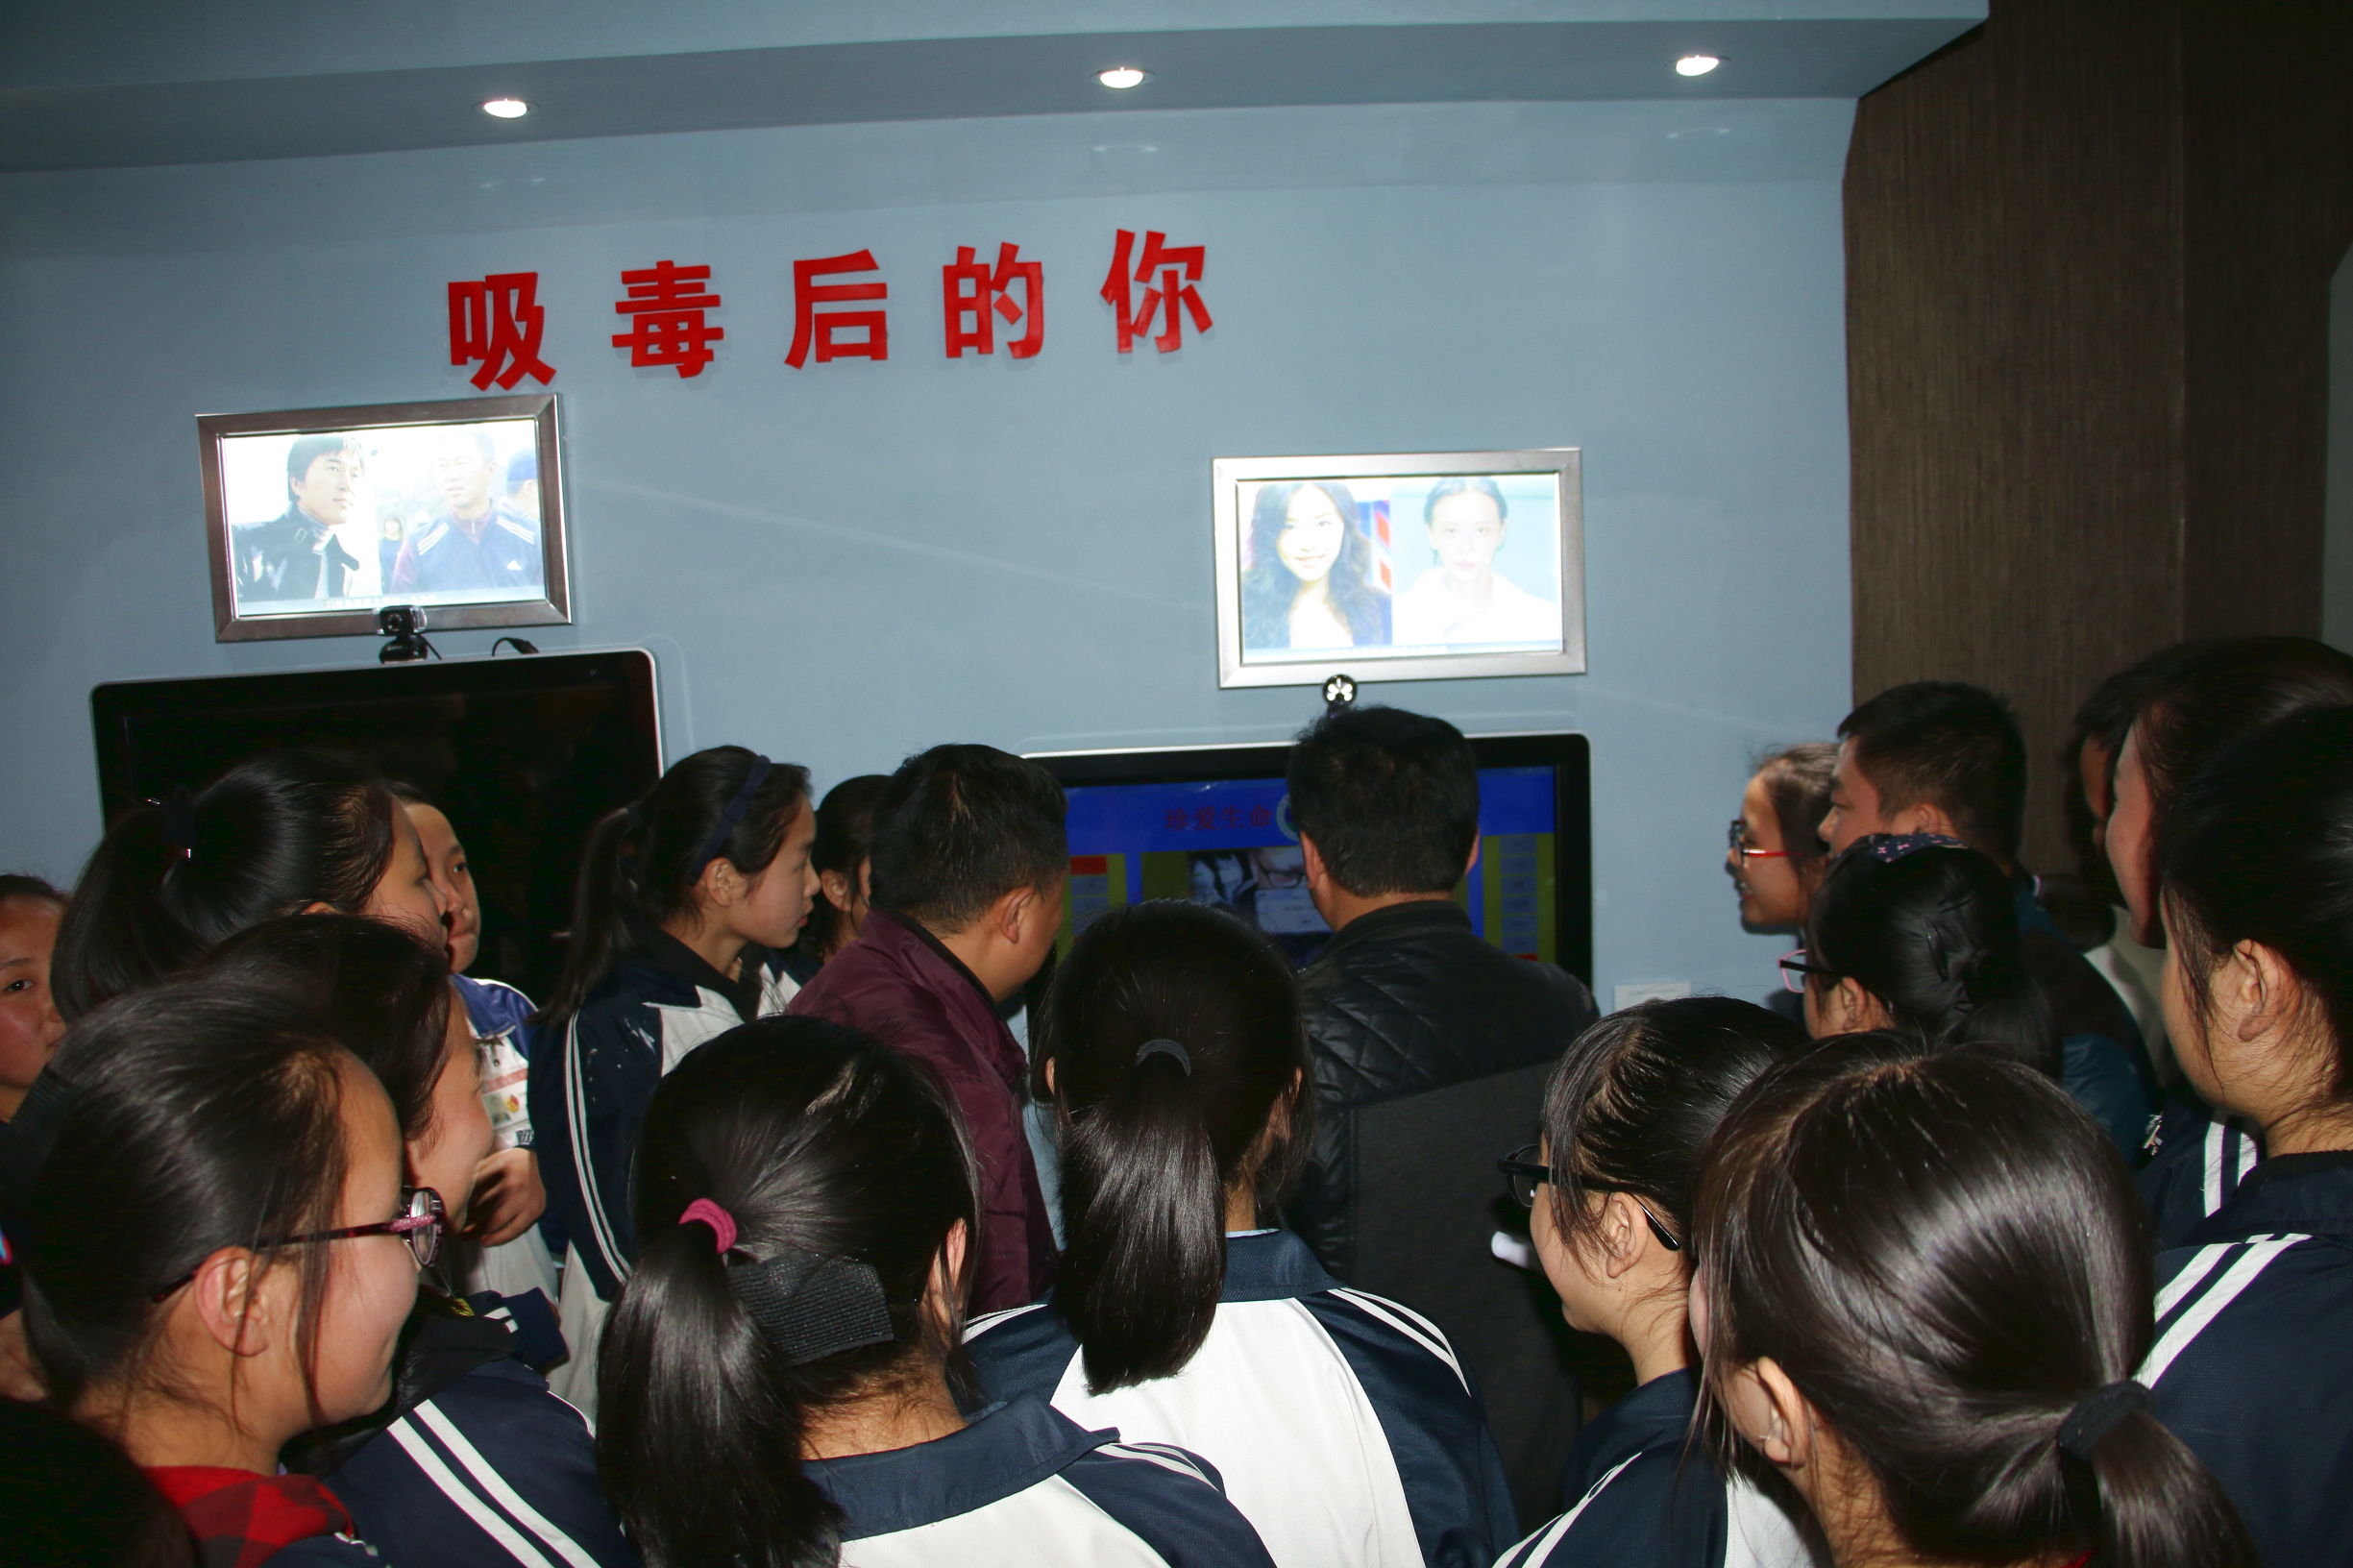 麻江县禁毒教育基地迎来了首批参观者